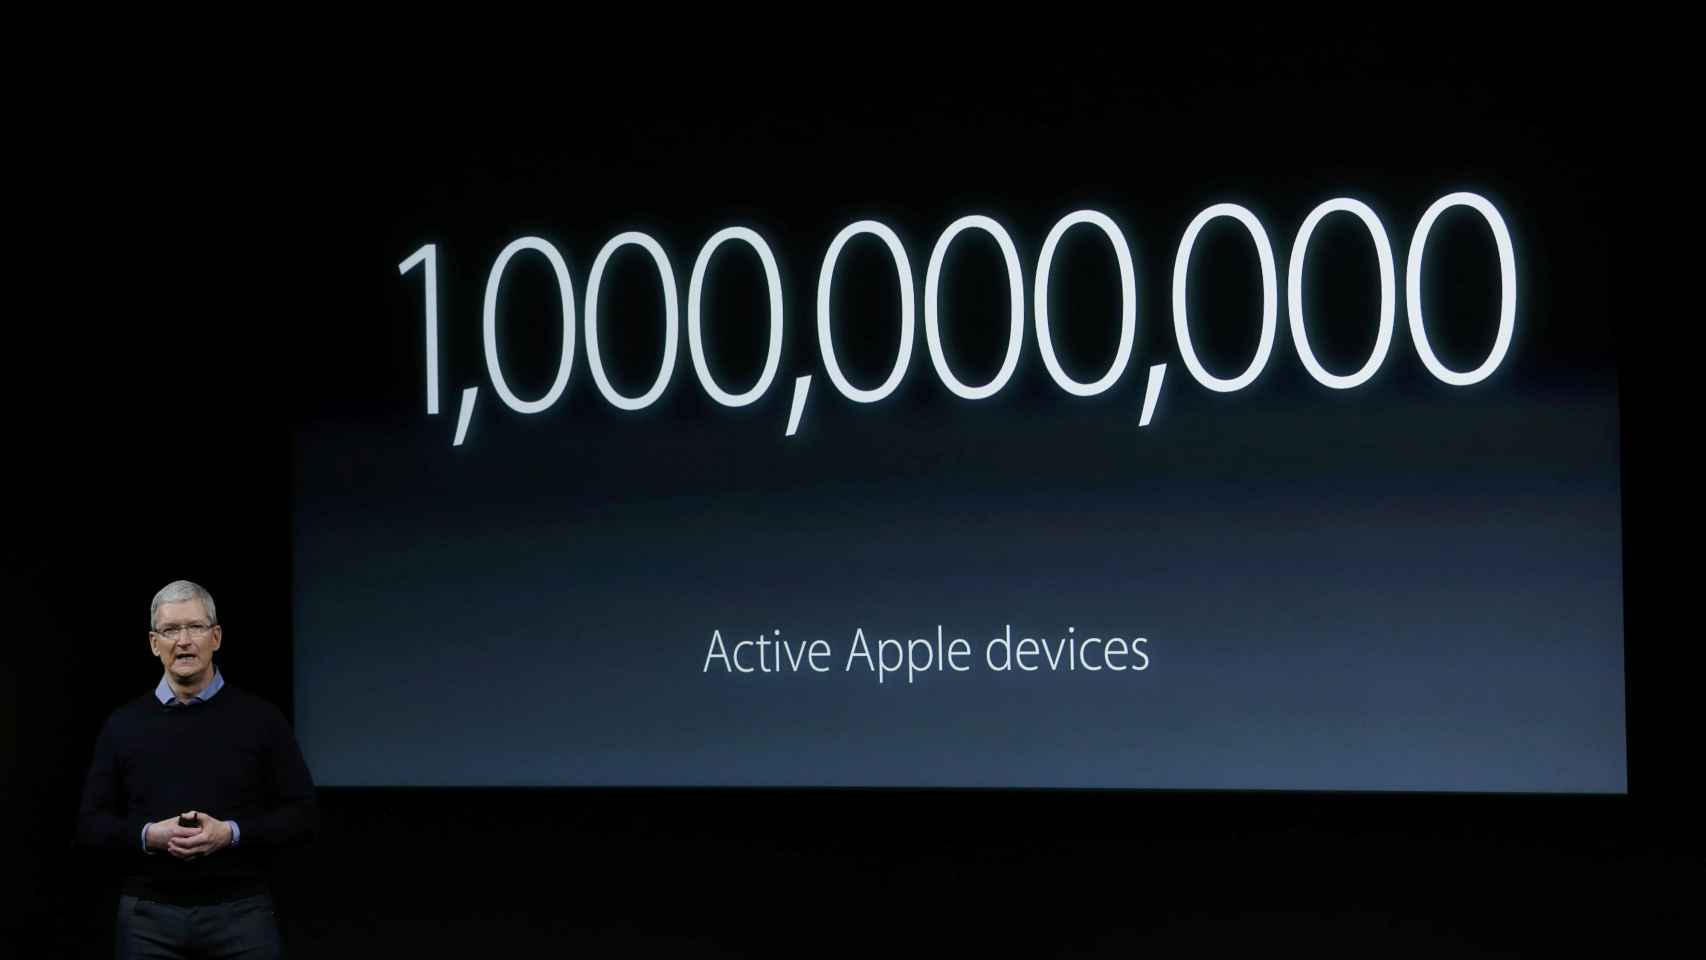 Ésta es la cantidad de dispositivos Apple en todo el mundo